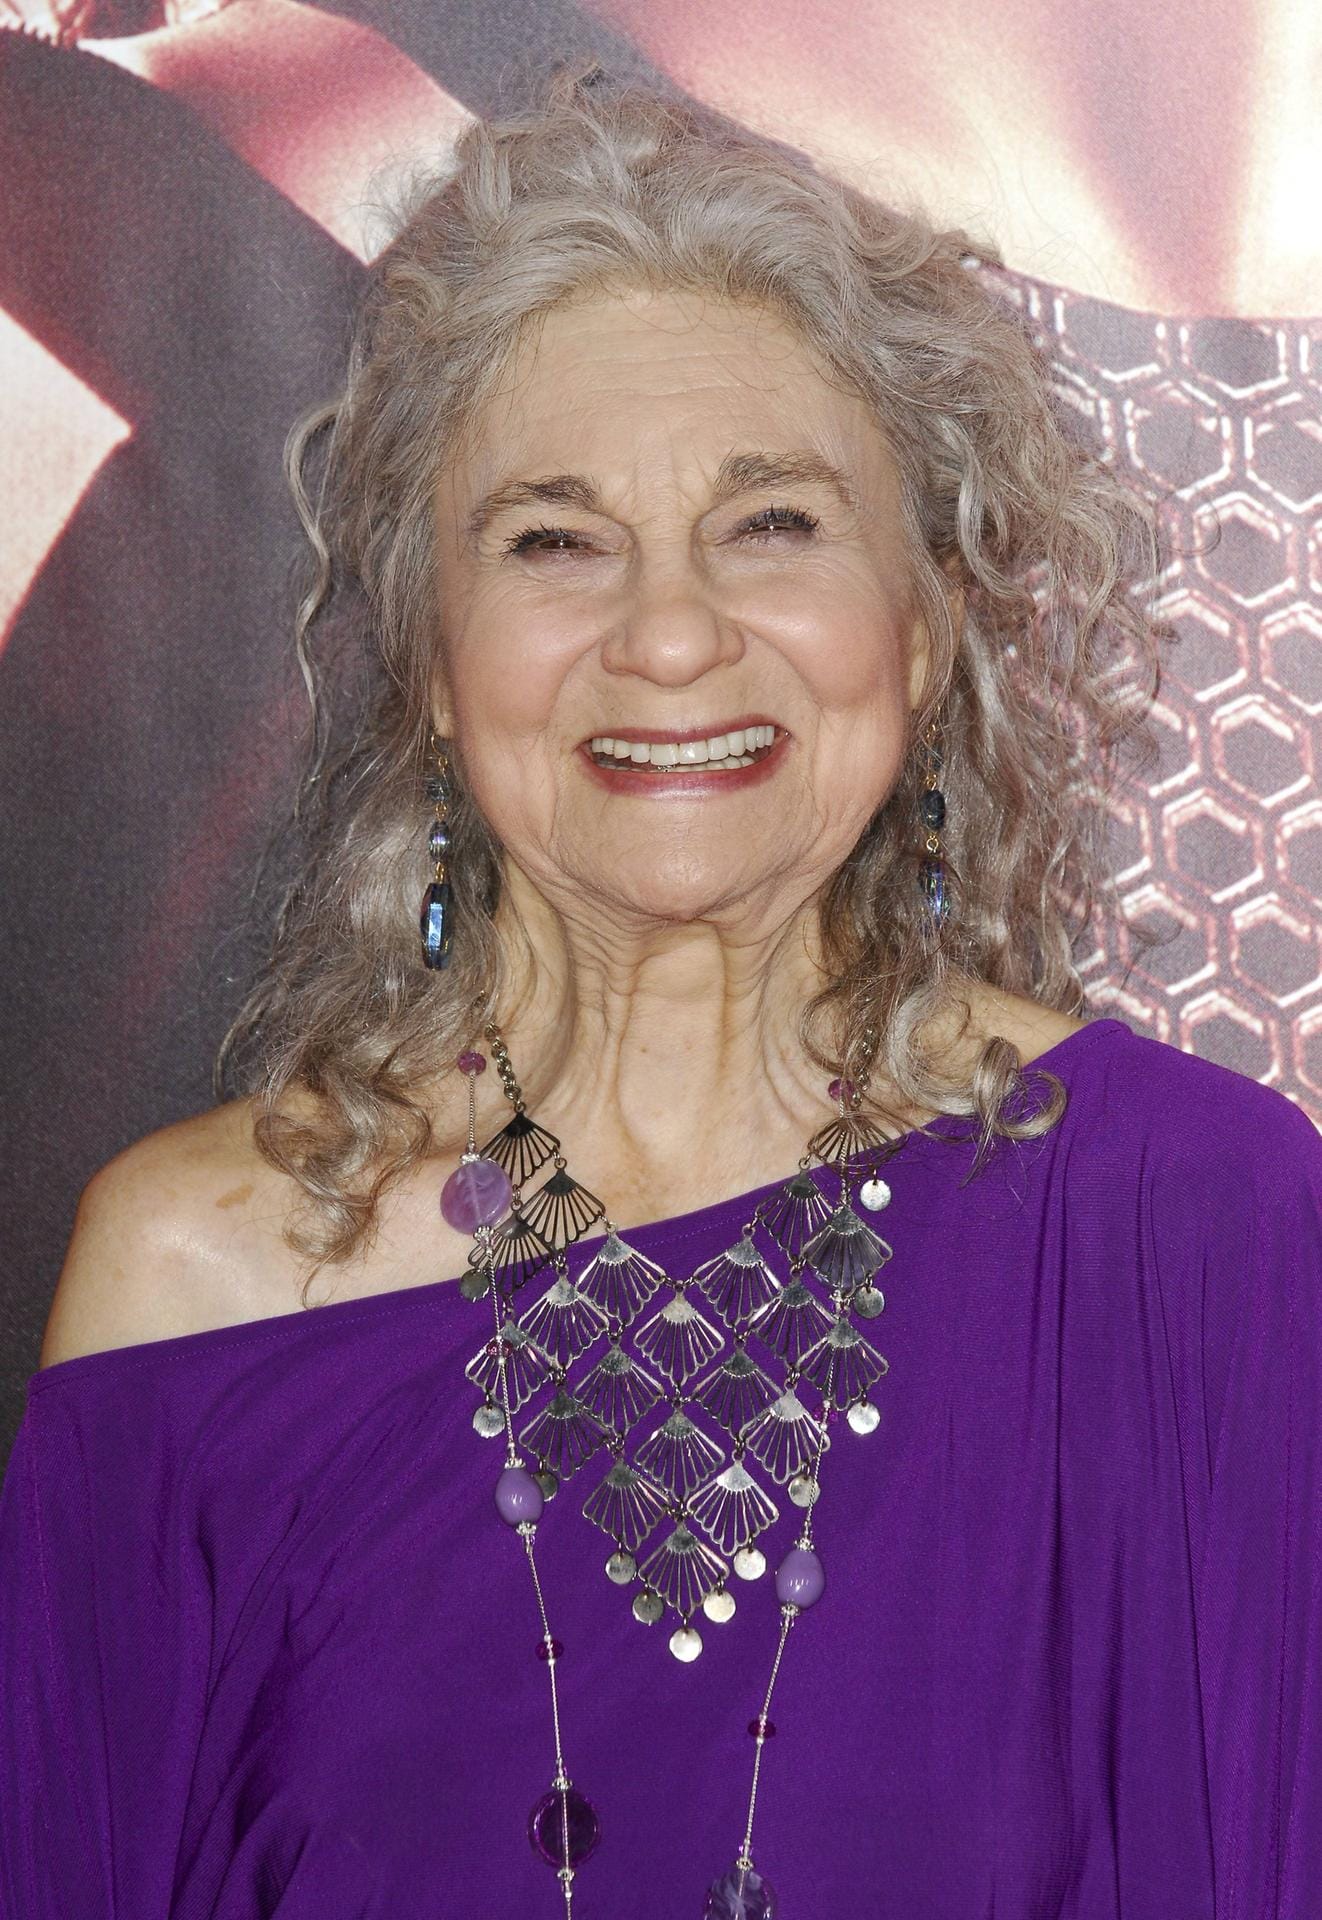 Schauspielerin Lynn Cohen spielte in der Serie Mirandas Haushälterin Magda. Im Februar 2020 starb sie, im Alter von 86 Jahren.